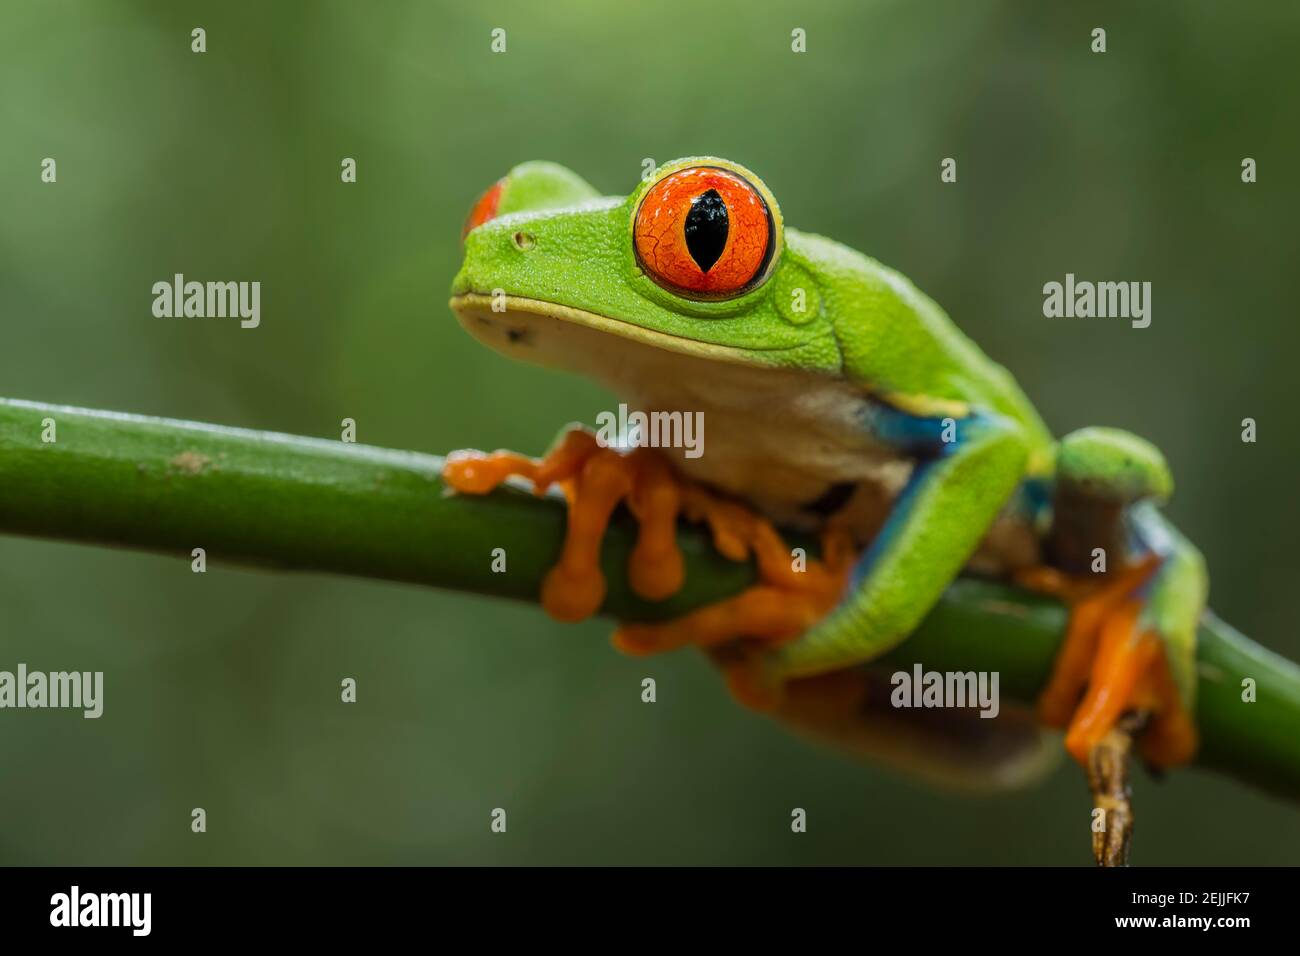 Grüner Frosch Mit Orange Füßen Stockfotos und -bilder Kaufen - Alamy